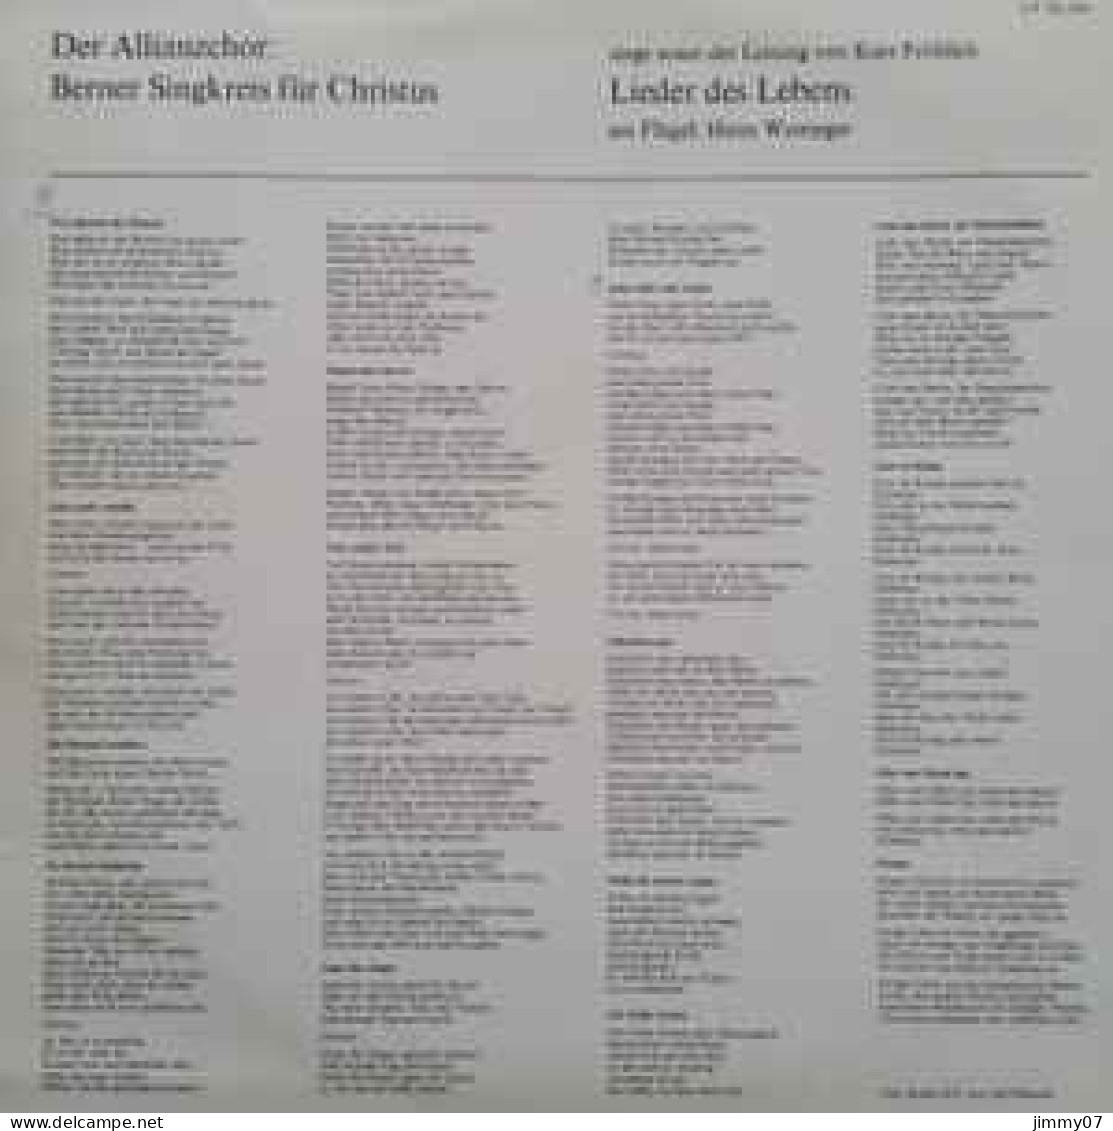 Berner Singkreis Für Christus - Lieder Des Lebens (LP, Album) - Clásica